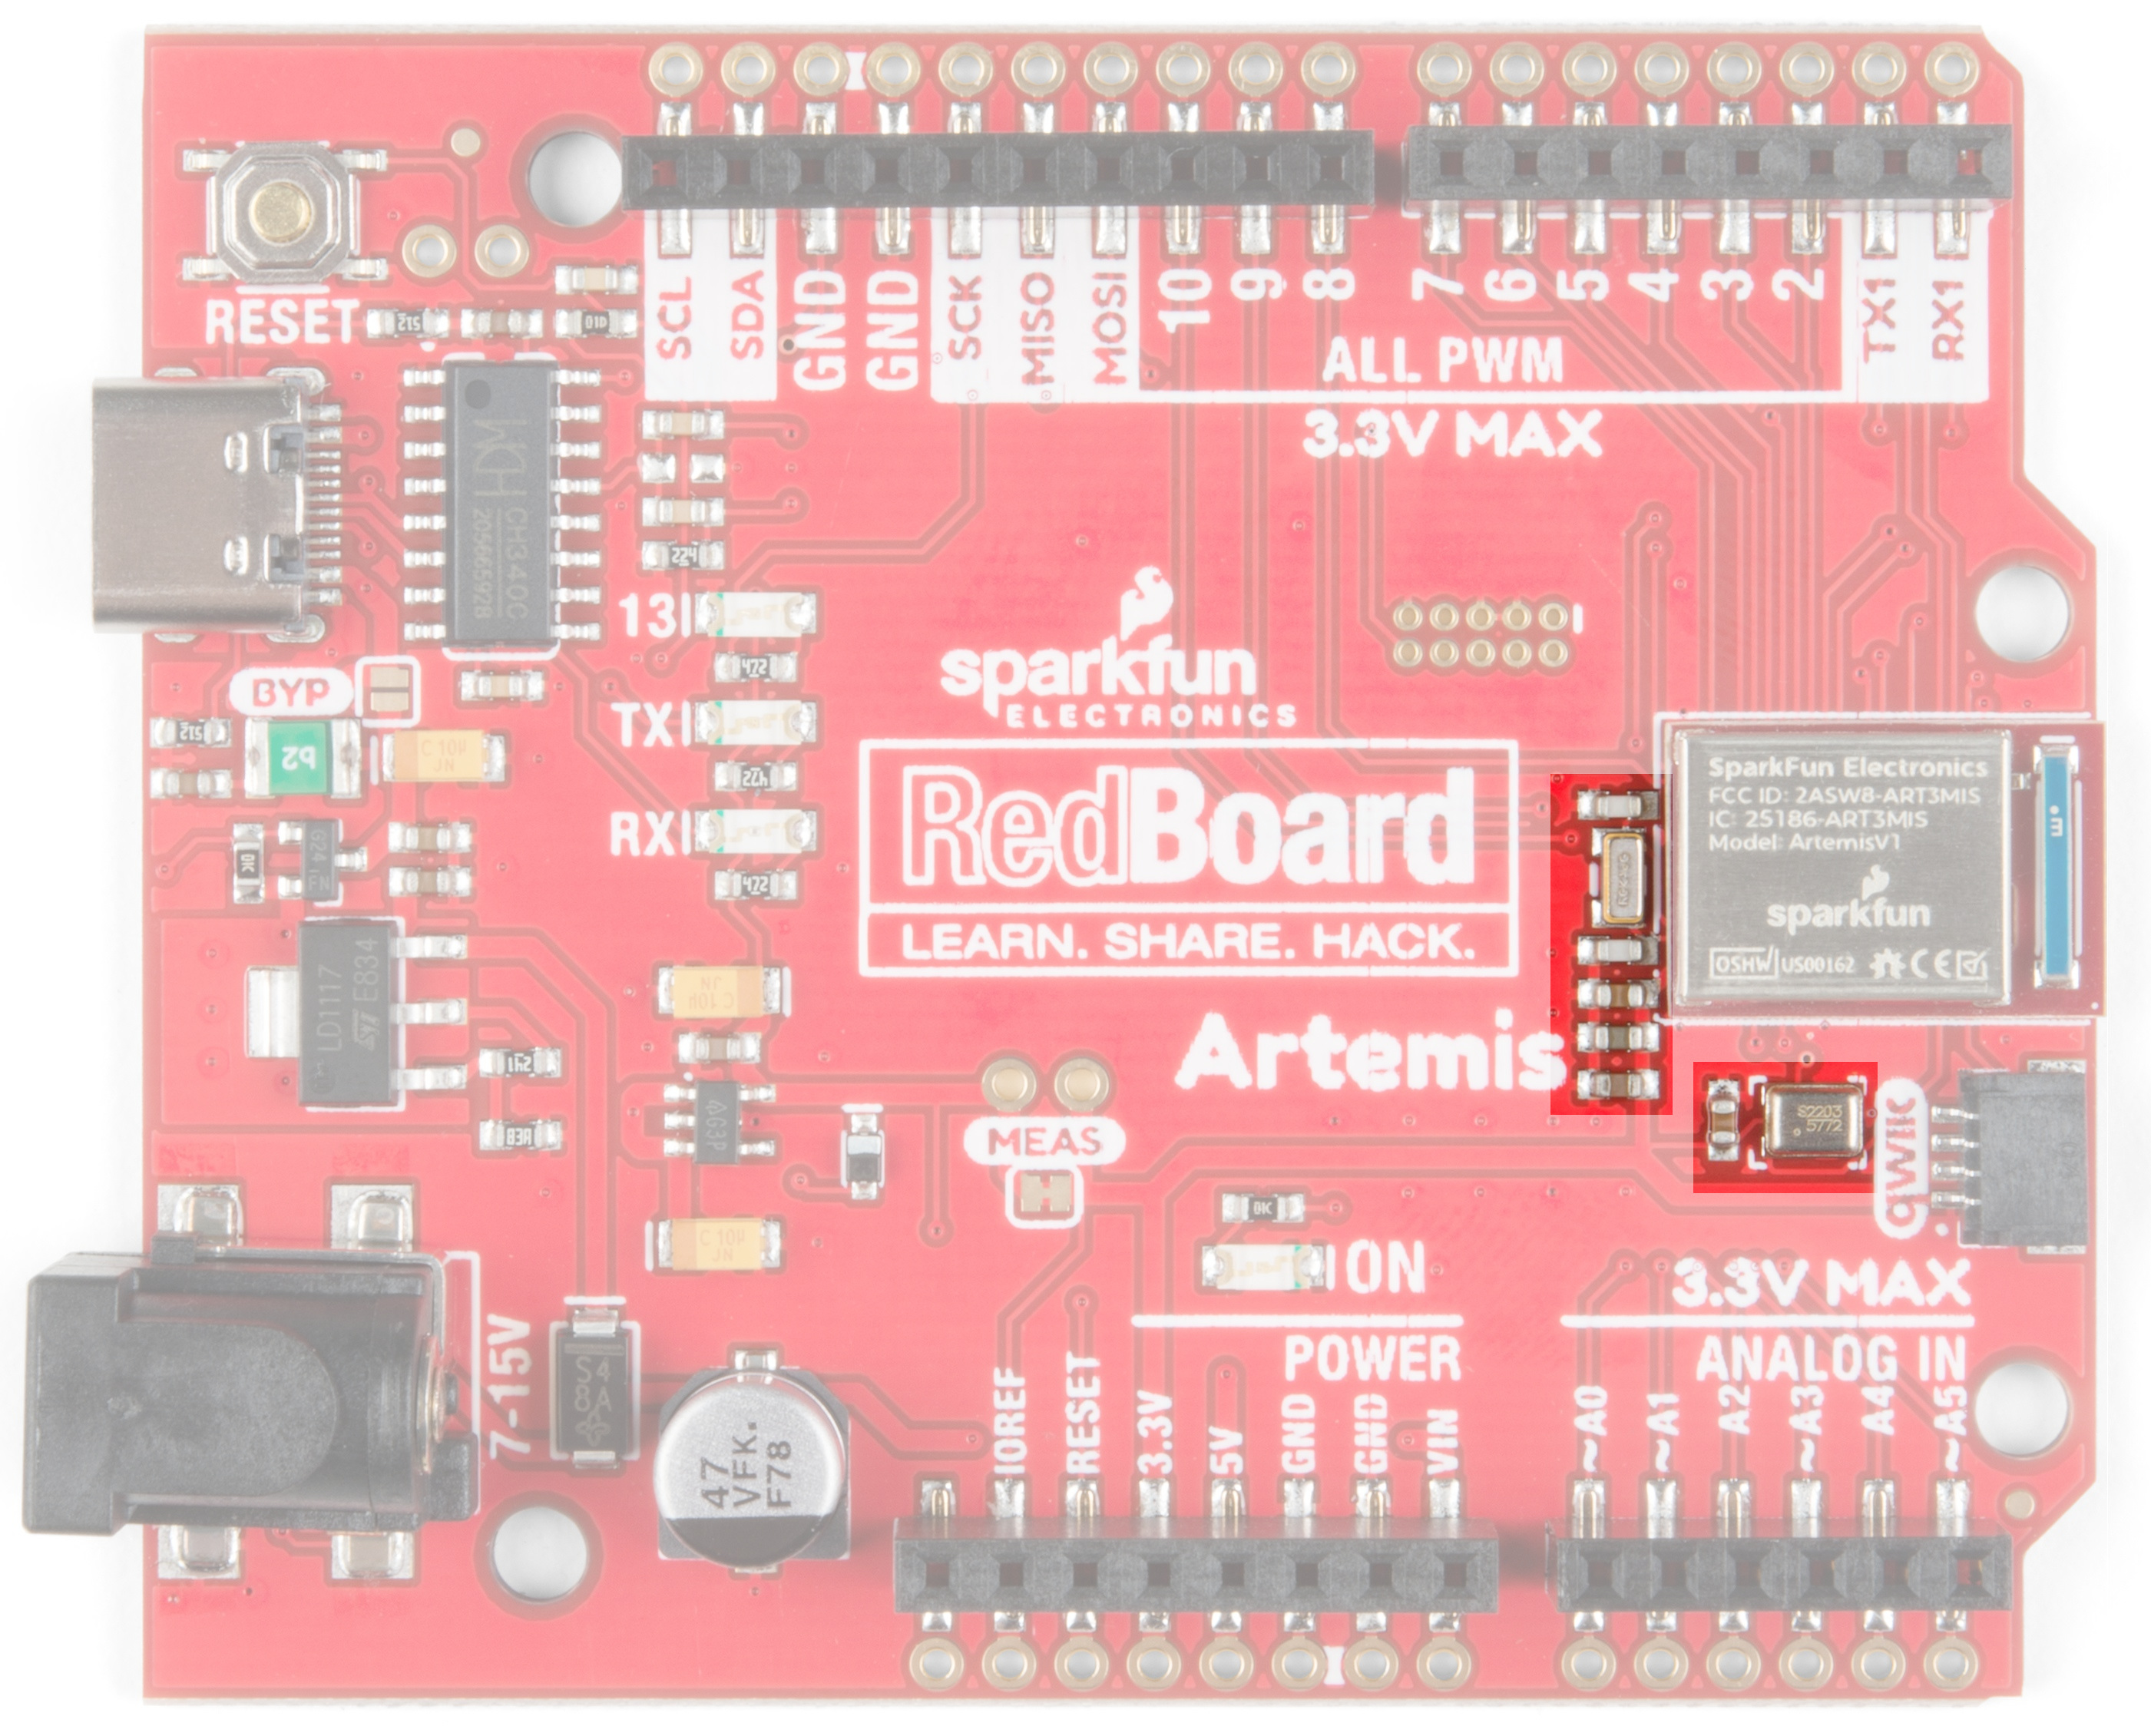 Build an Ardubot - SparkFun Electronics